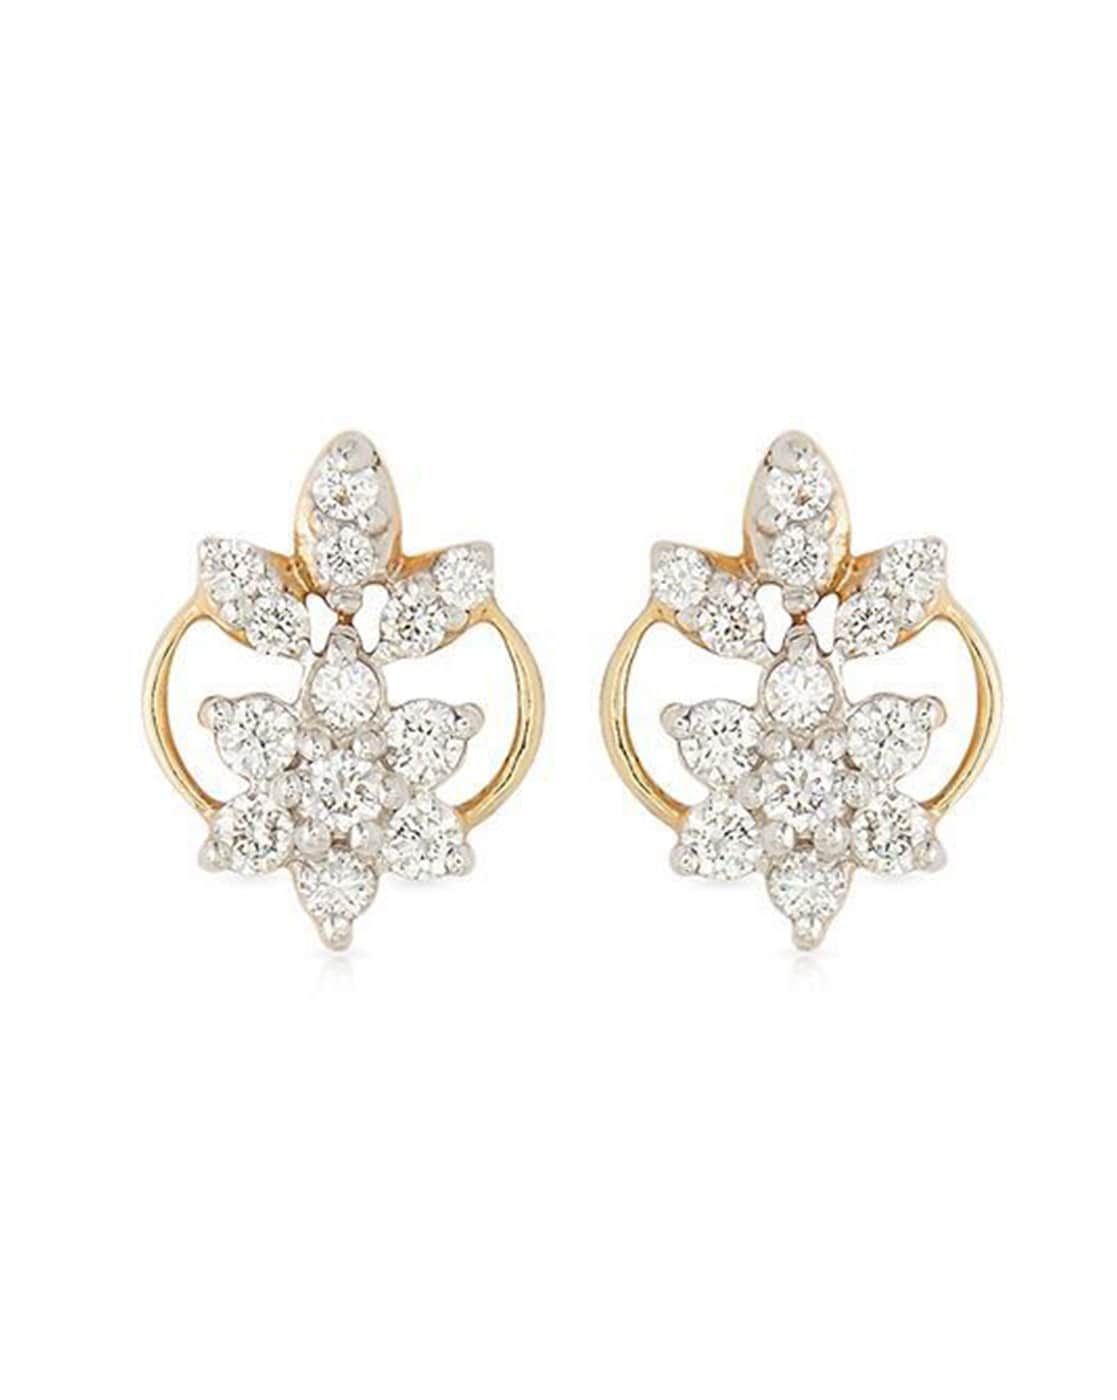 Buy Kiyara White Gold Diamond Stud Earrings Online | Designer Jewellery  online Shopping India | Diamond Earrings Online Shopping